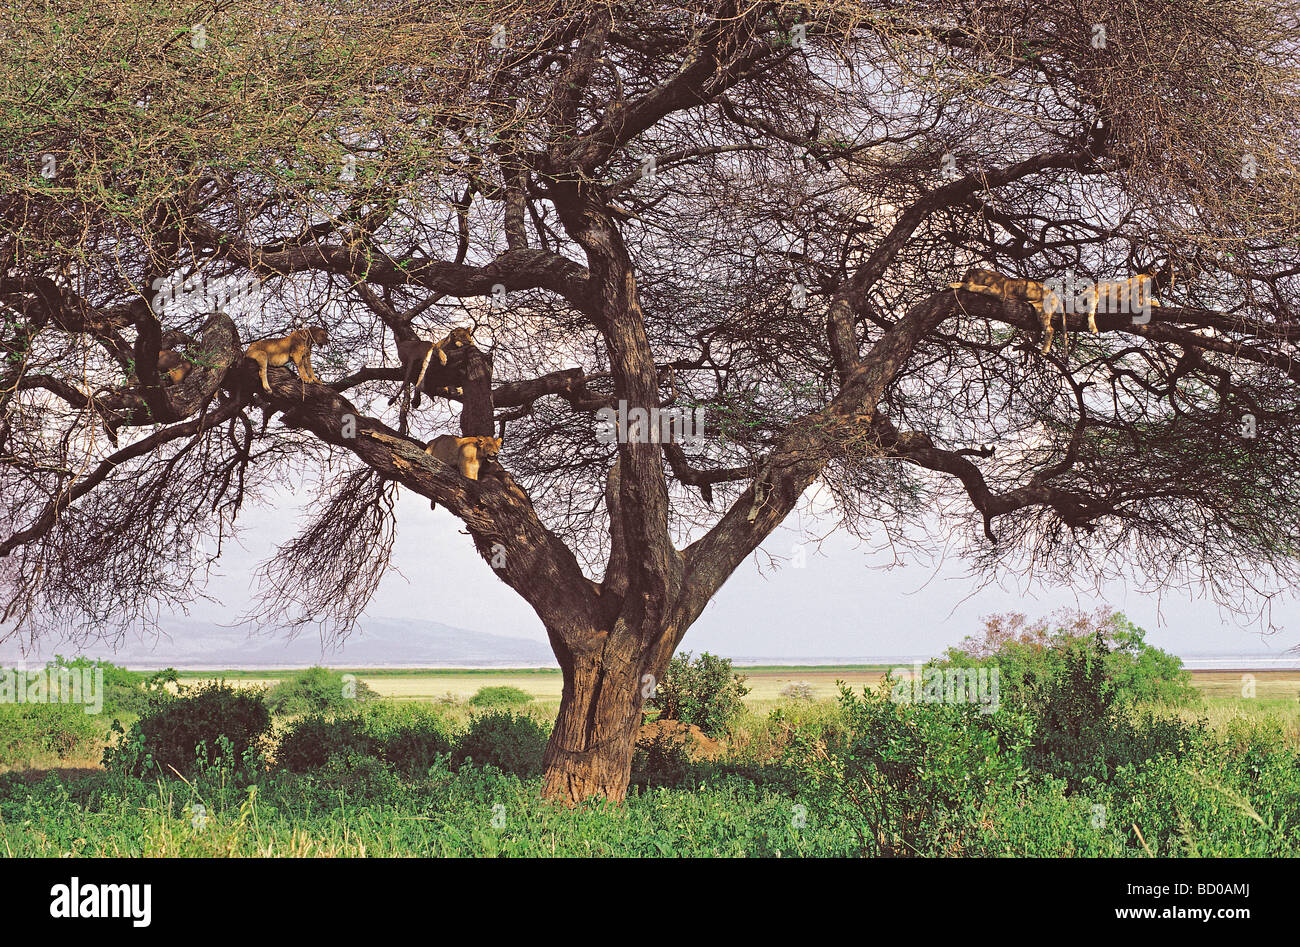 Six lions d'accrobranche en appui sur la braches de Acacia tortilis arbre dans le parc national du lac Manyara Tanzanie Afrique de l'Est Banque D'Images